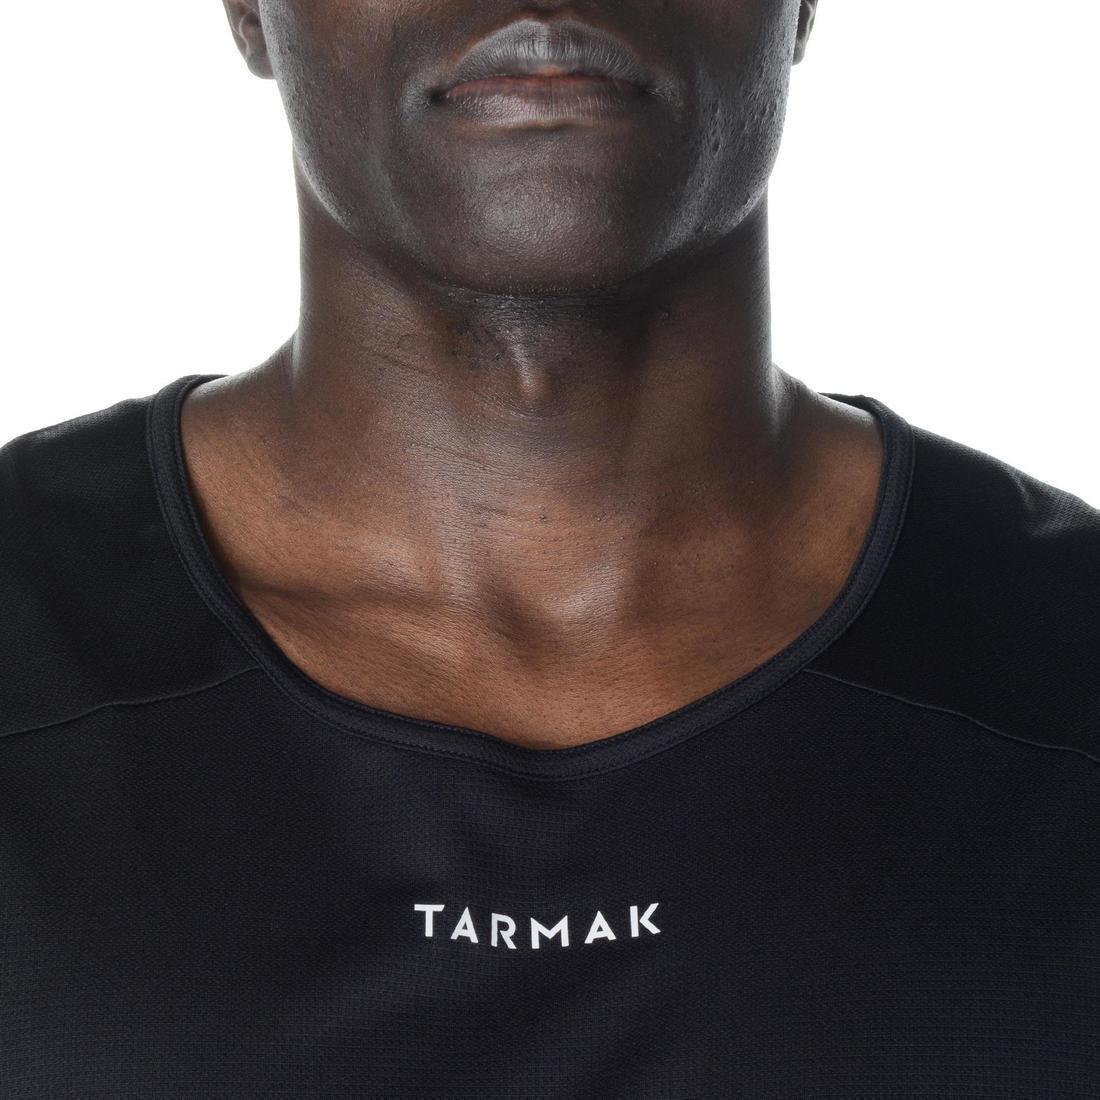 TARMAK - Men's Sleeveless Basketball Jersey T100, Deep Blue